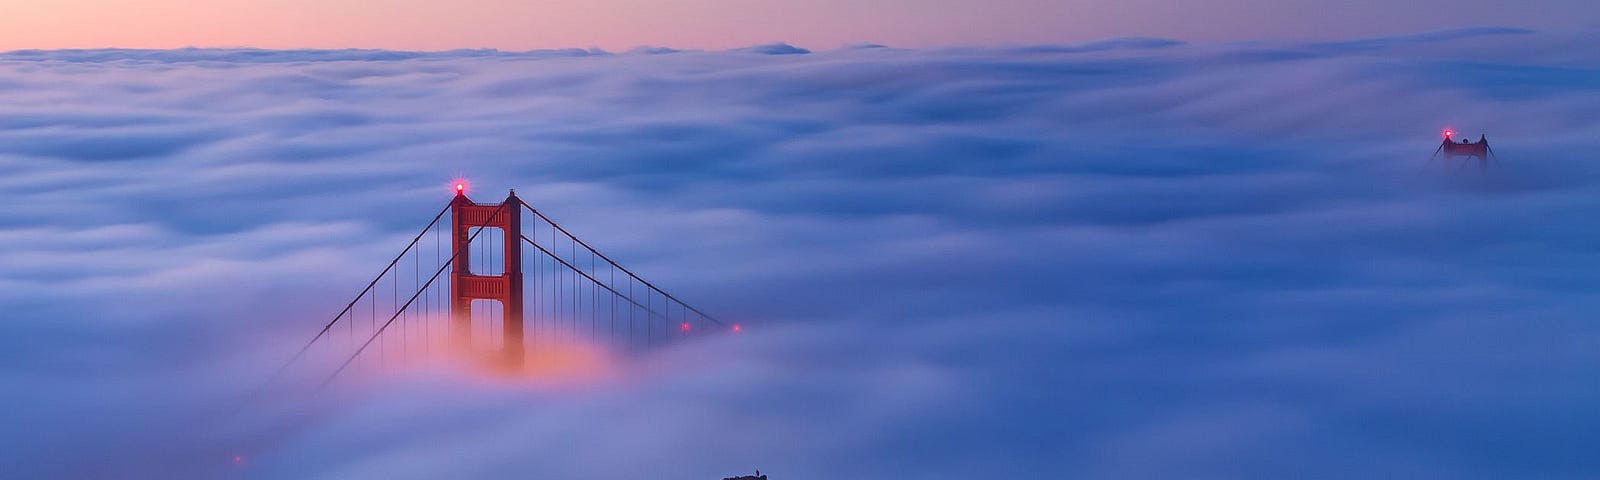 An image of the Golden Gate Bridge shrouded in fog